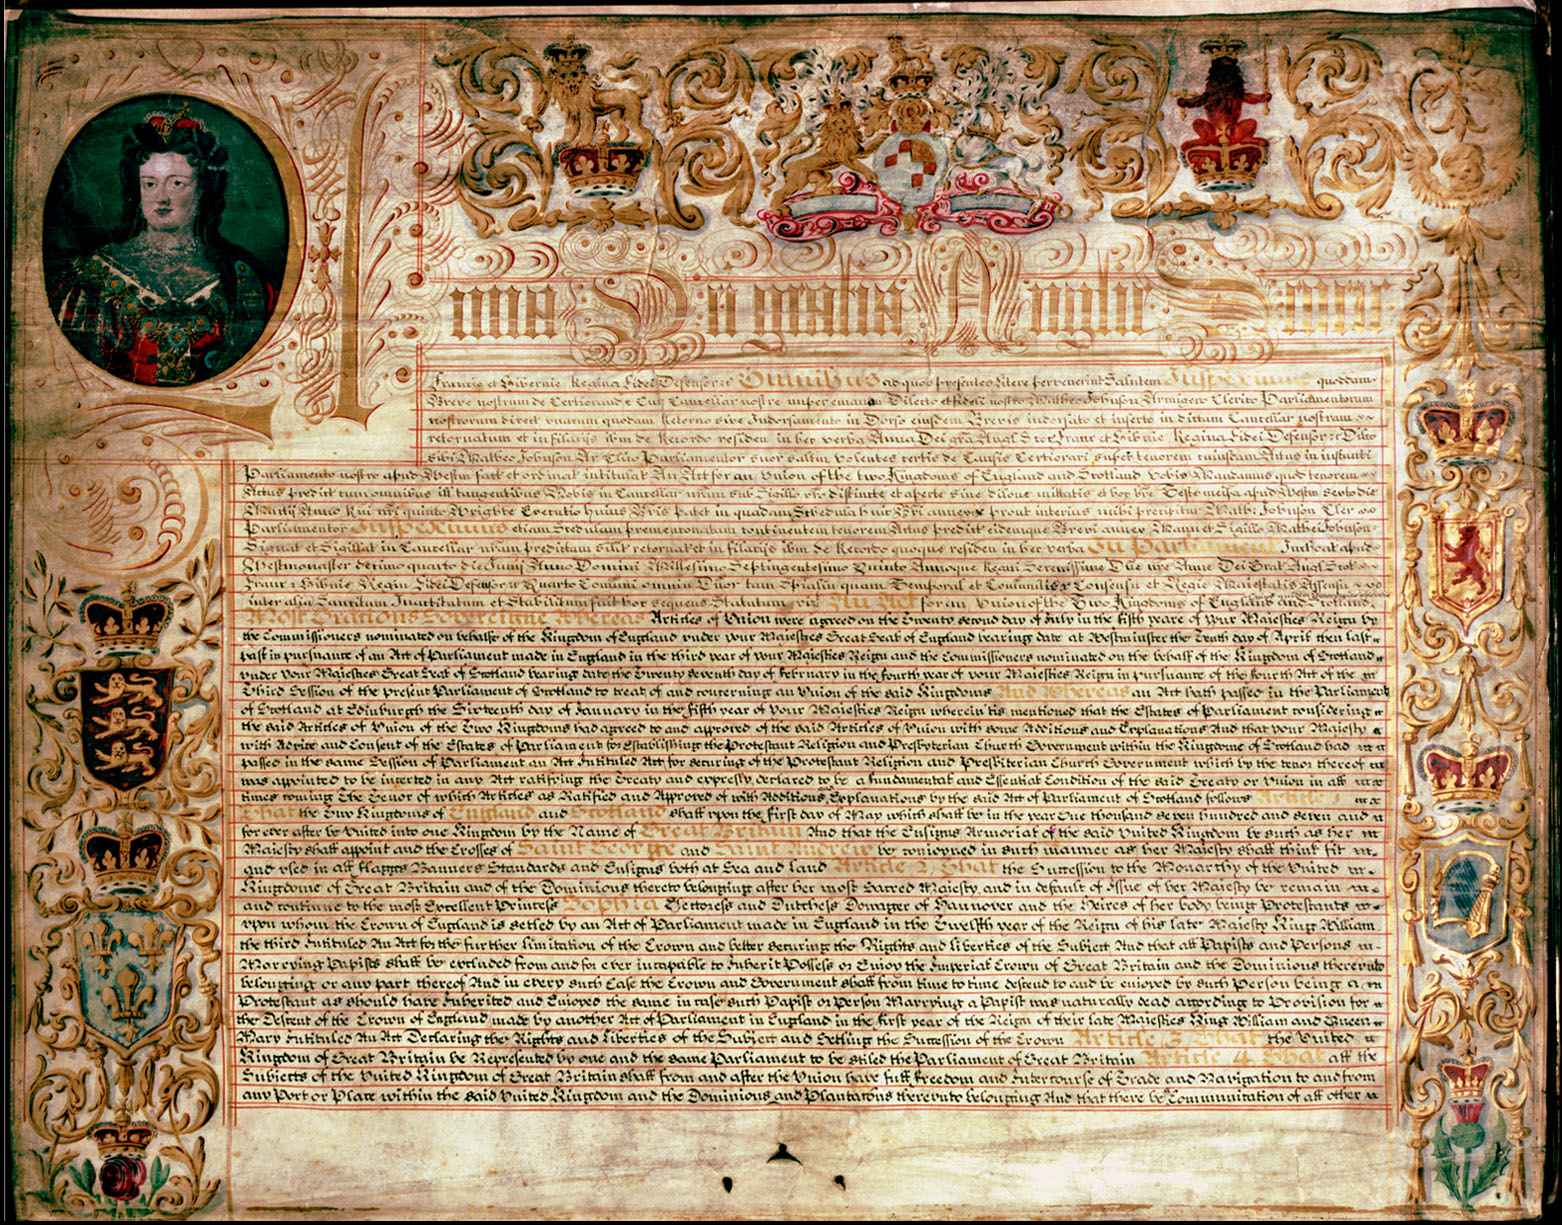 Объединение Англии и Шотландии - договор